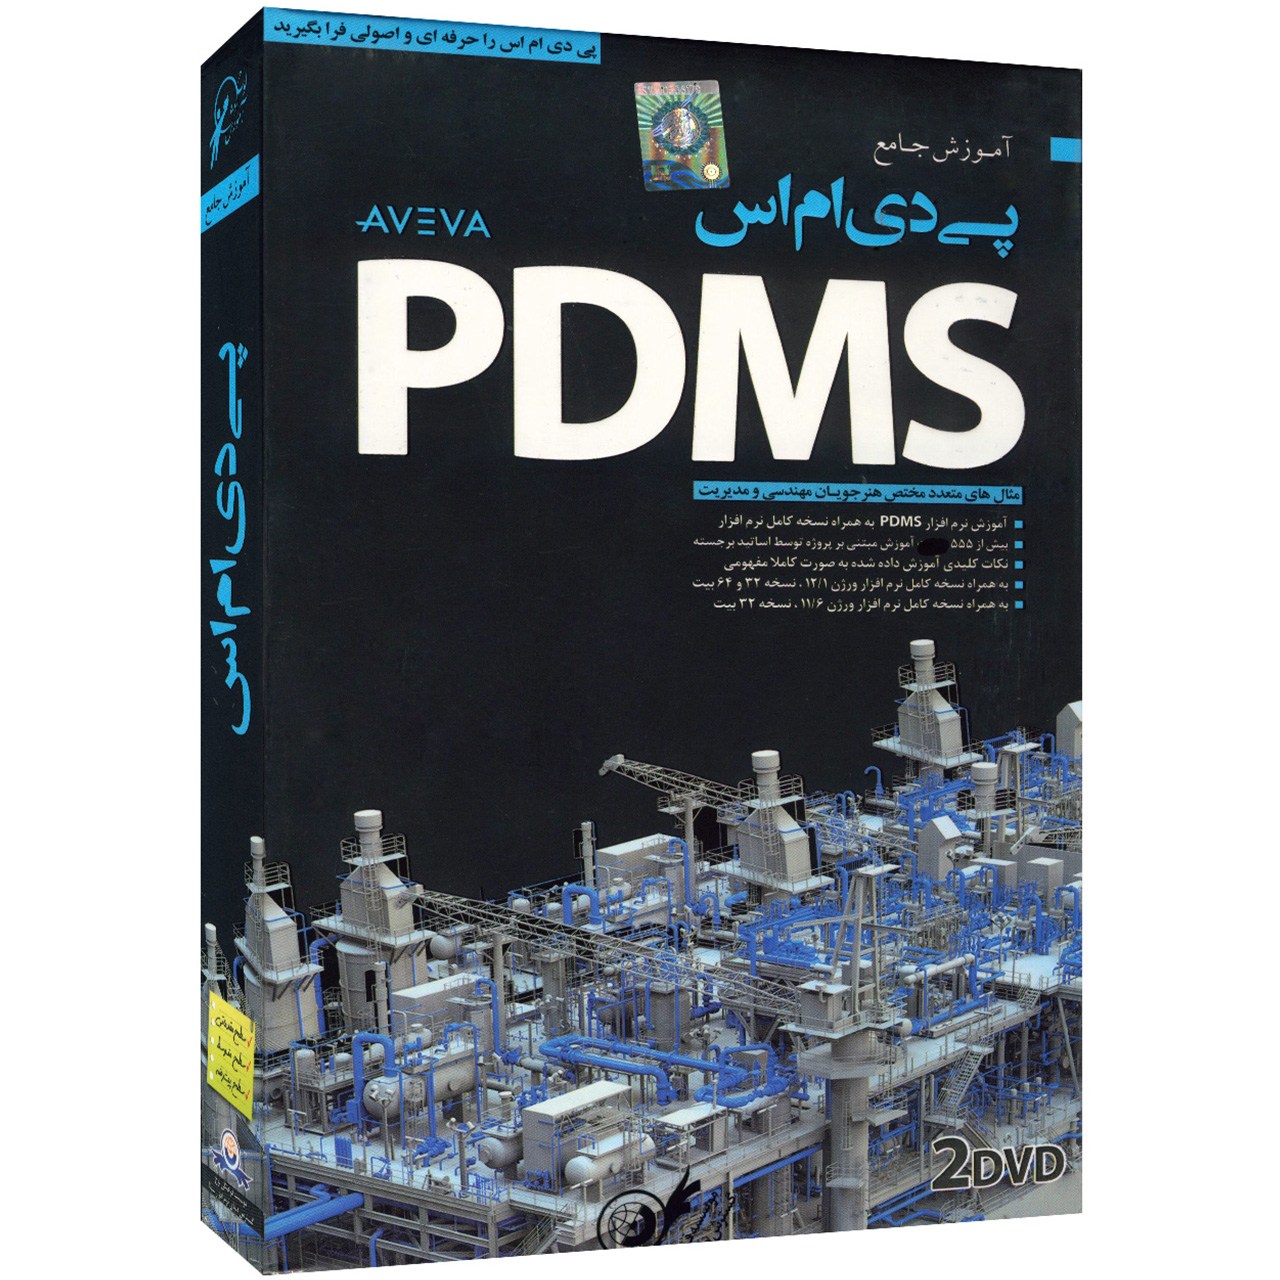 آموزش تصویری PDMS نشر دنیای نرم افزار سینا